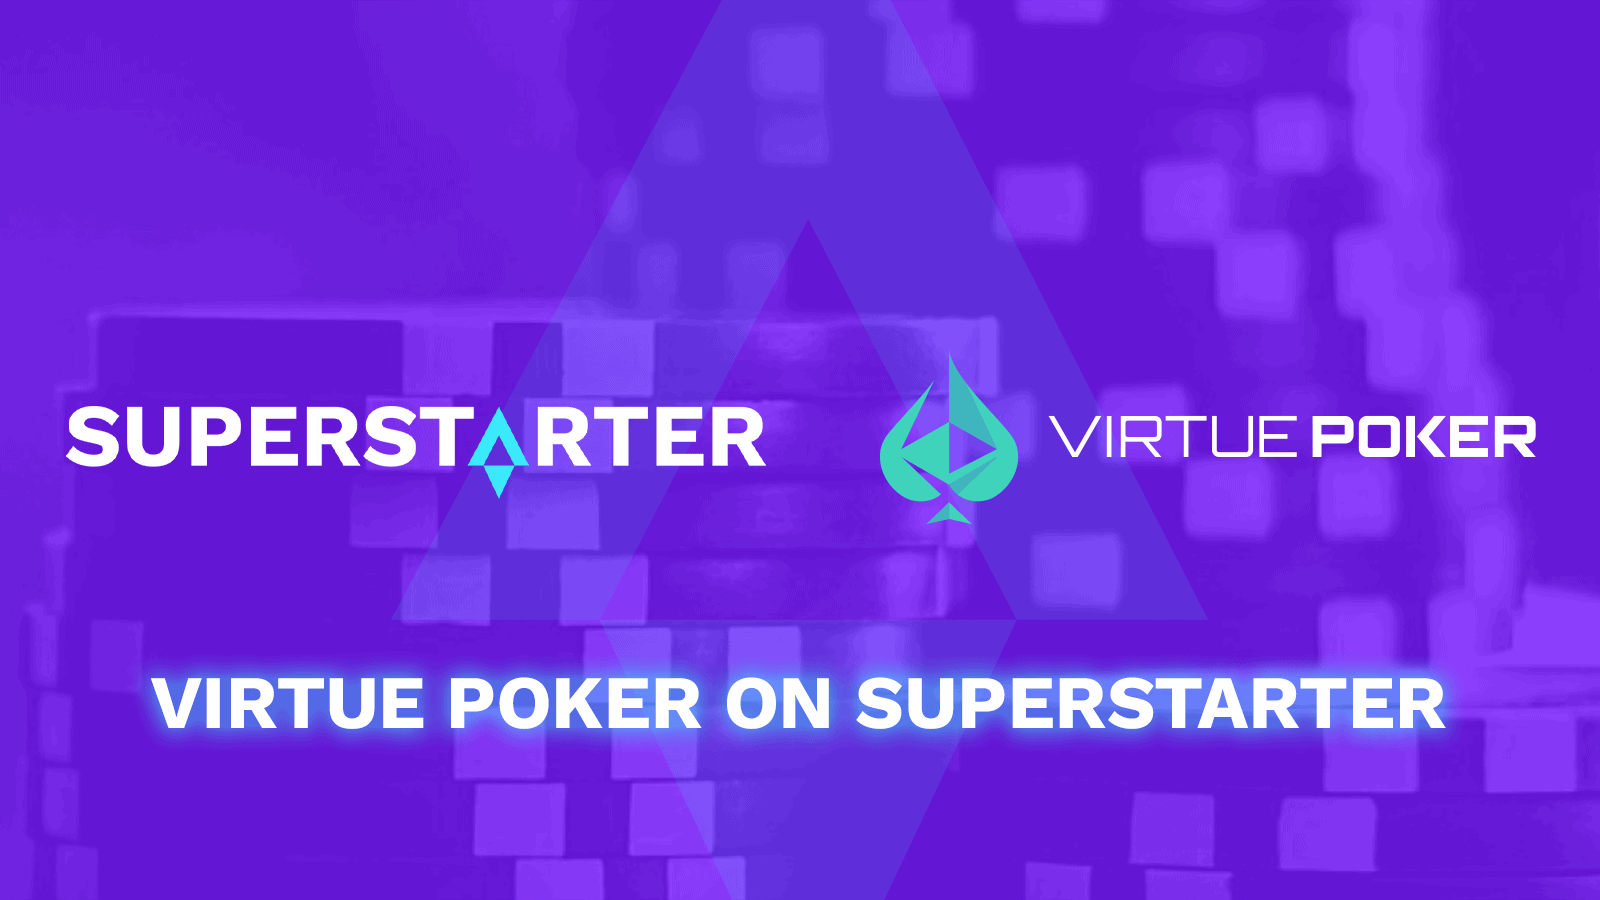 Virtue-poker-ido-on-superstarter-kicks-off-on-may-28